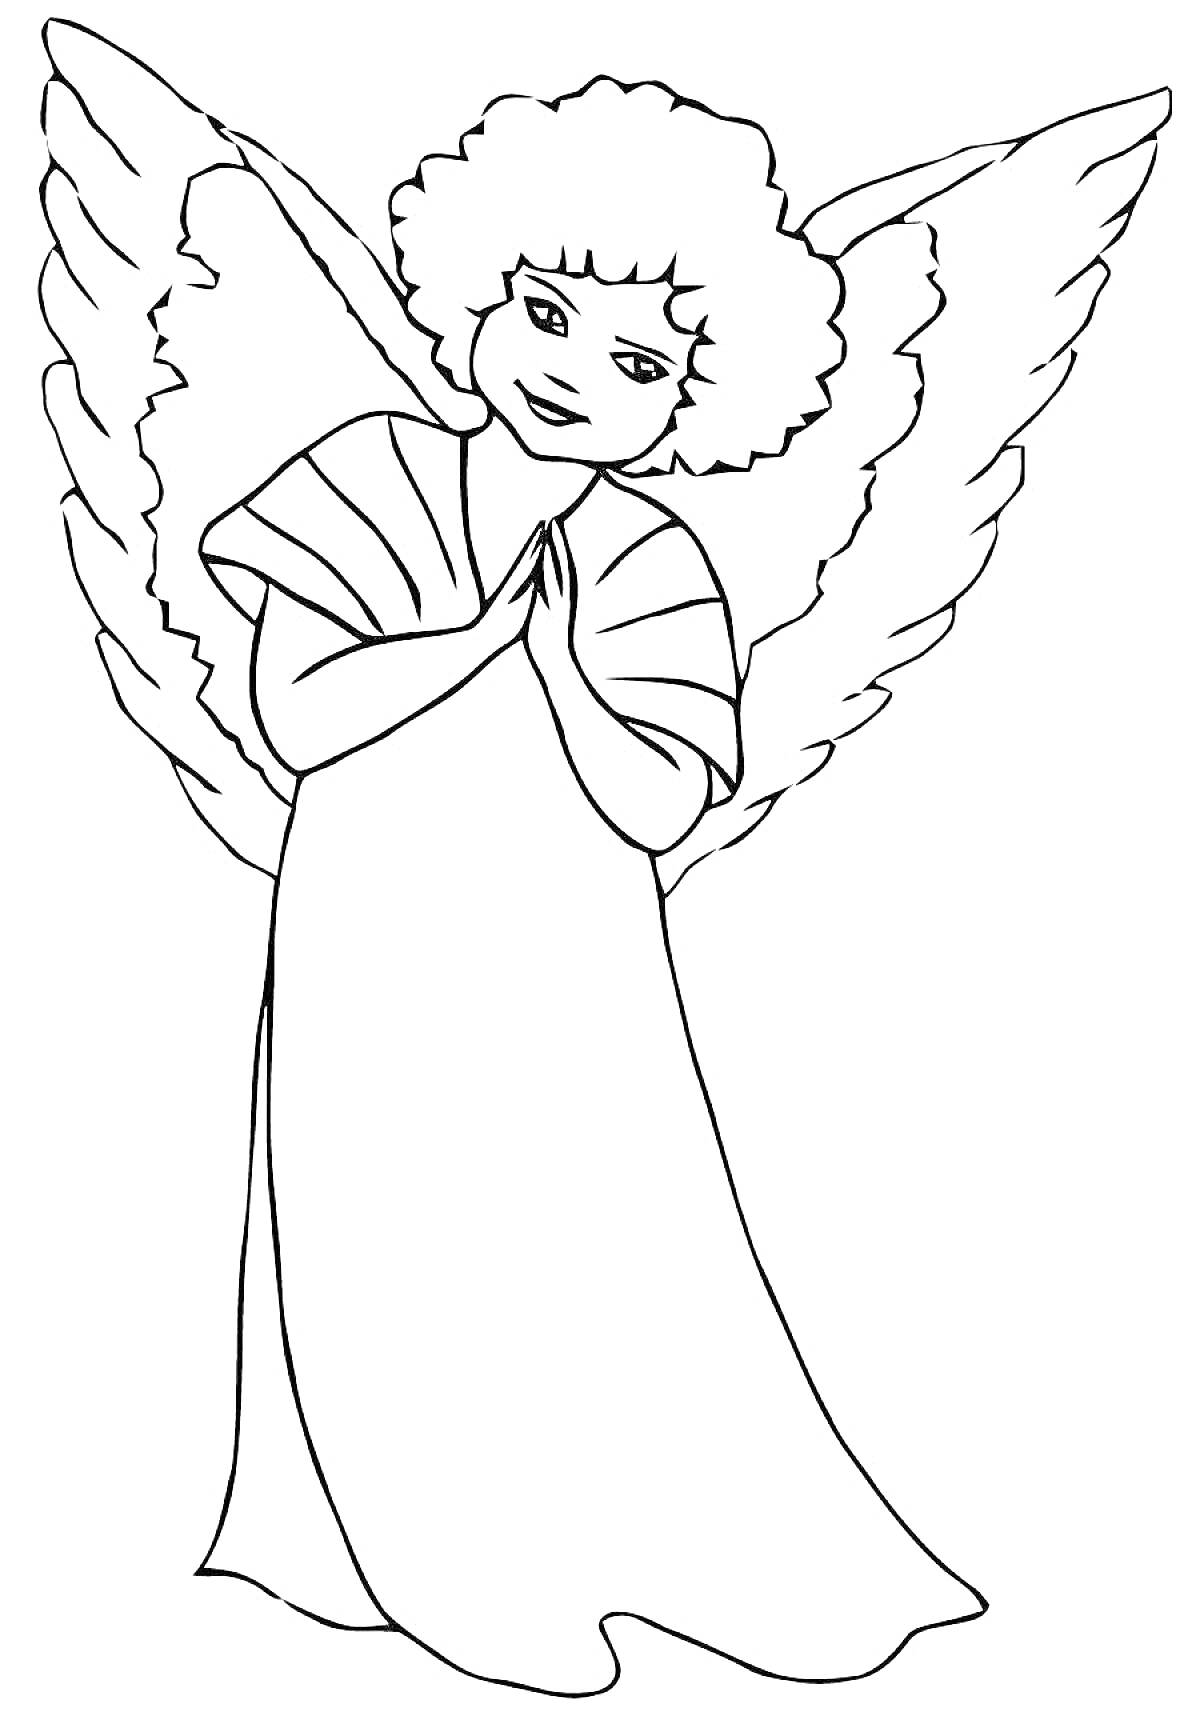 Ангел с крыльями и в длинном платье, руки сложены на груди.